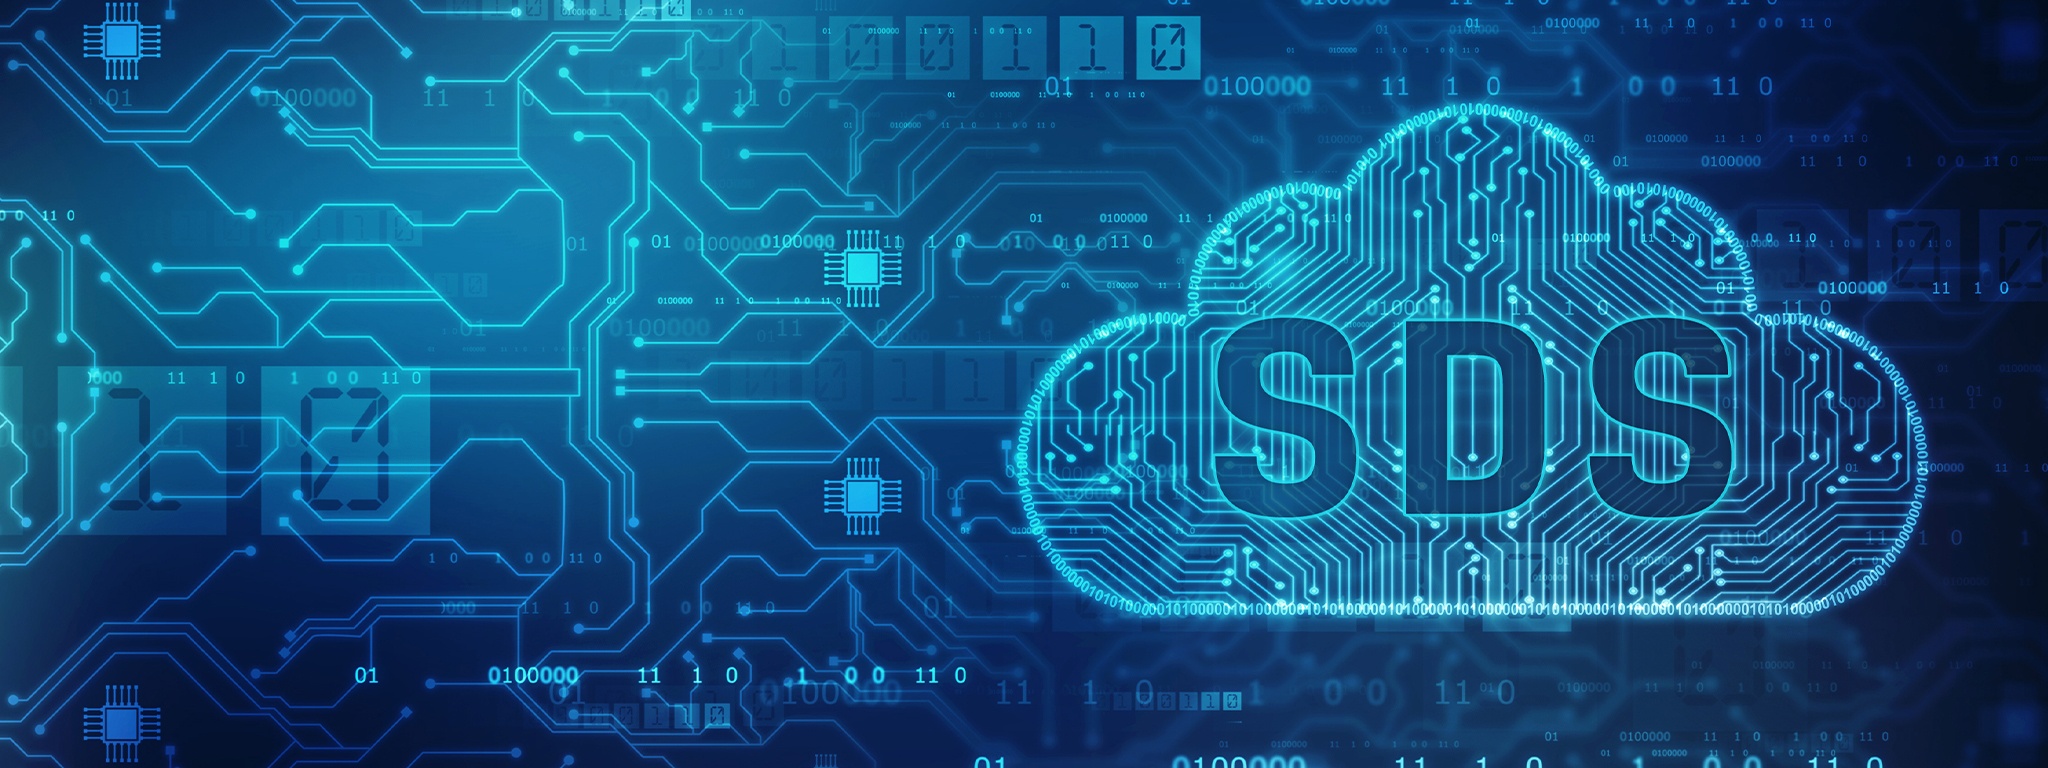 Контурное изображение облака с буквами SDS над рисунком дорожек и микросхем печатной платы